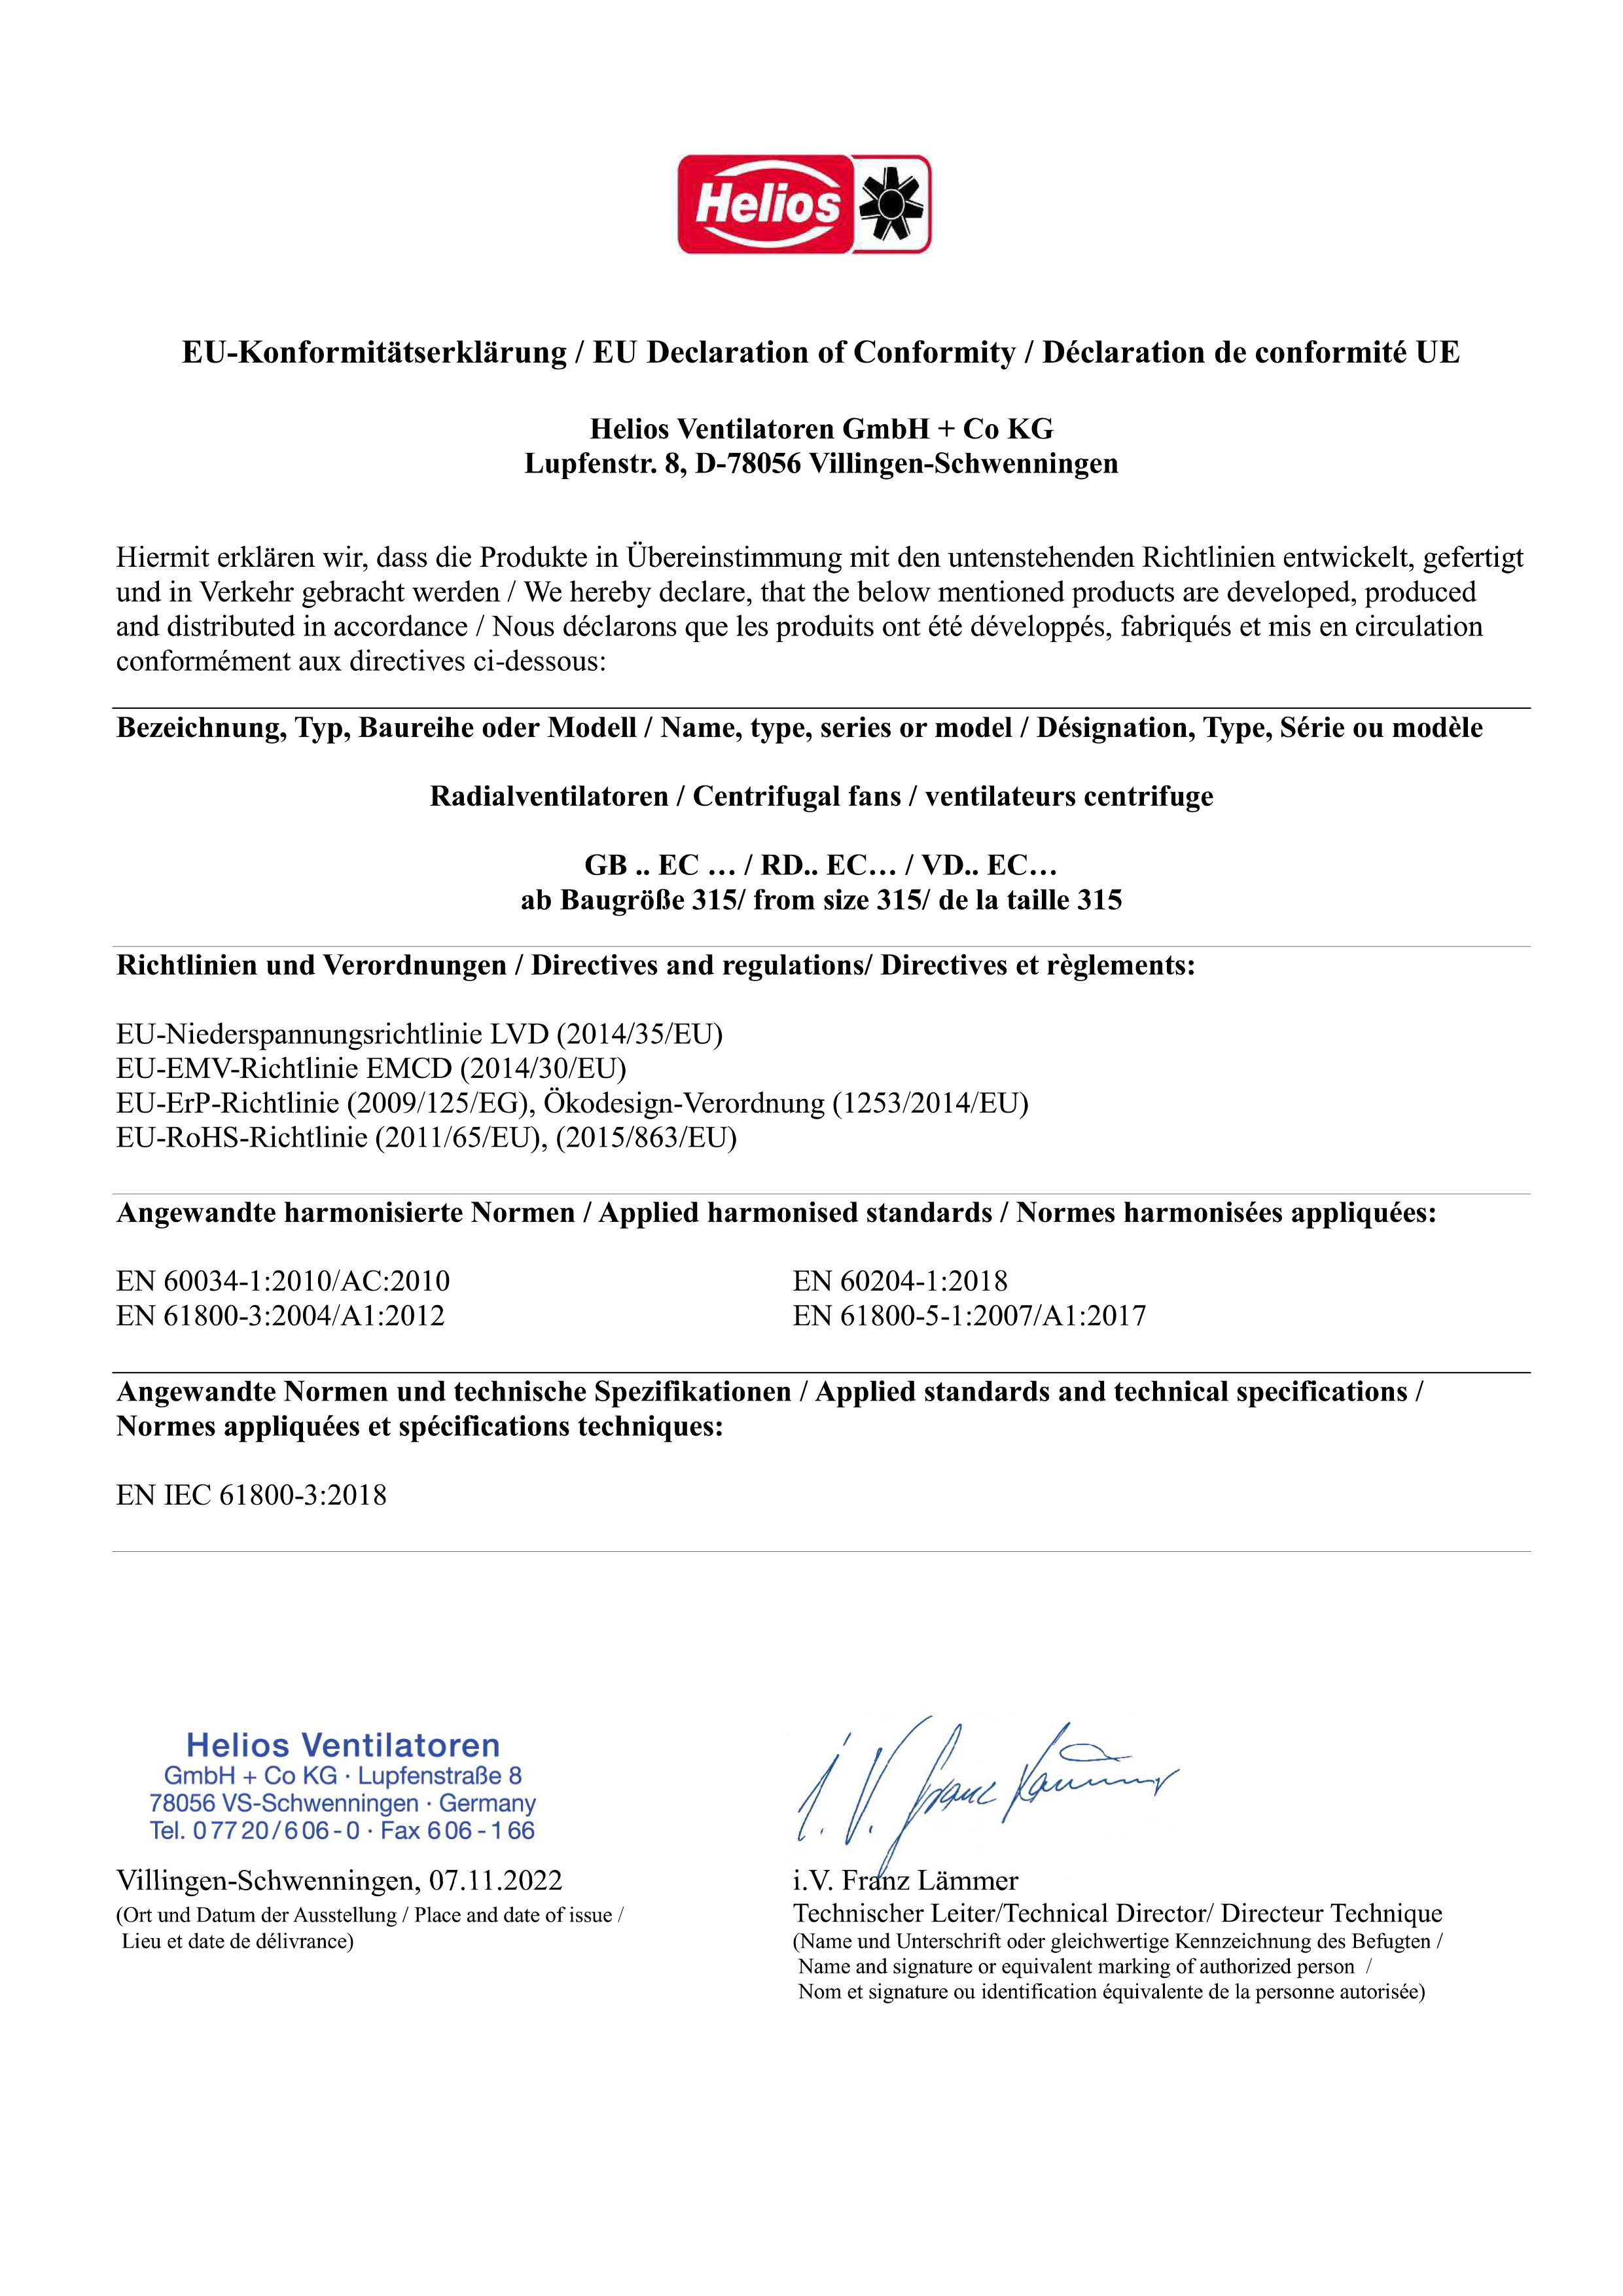 DECLARATION of CONFORMITY "GBW/GBD-EC/T120"